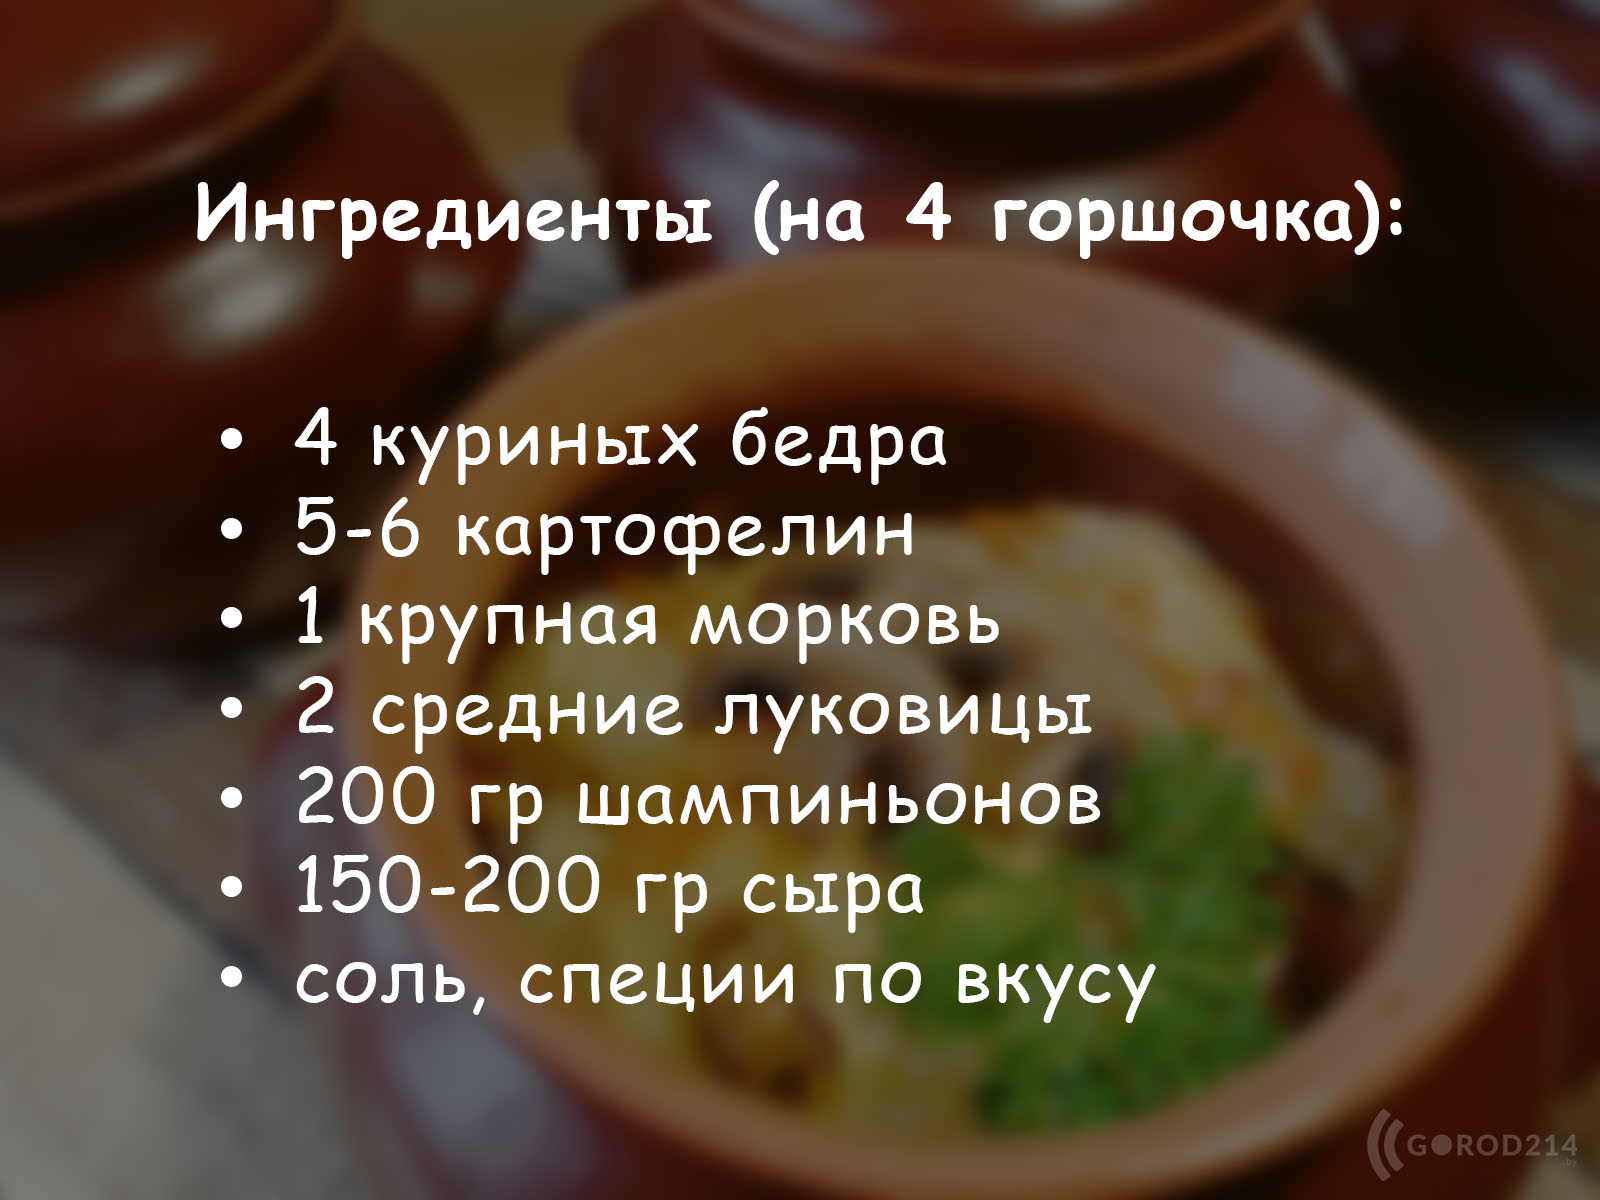 Картофель с грибами в горшочках - пошаговый рецепт с фото на natali-fashion.ru